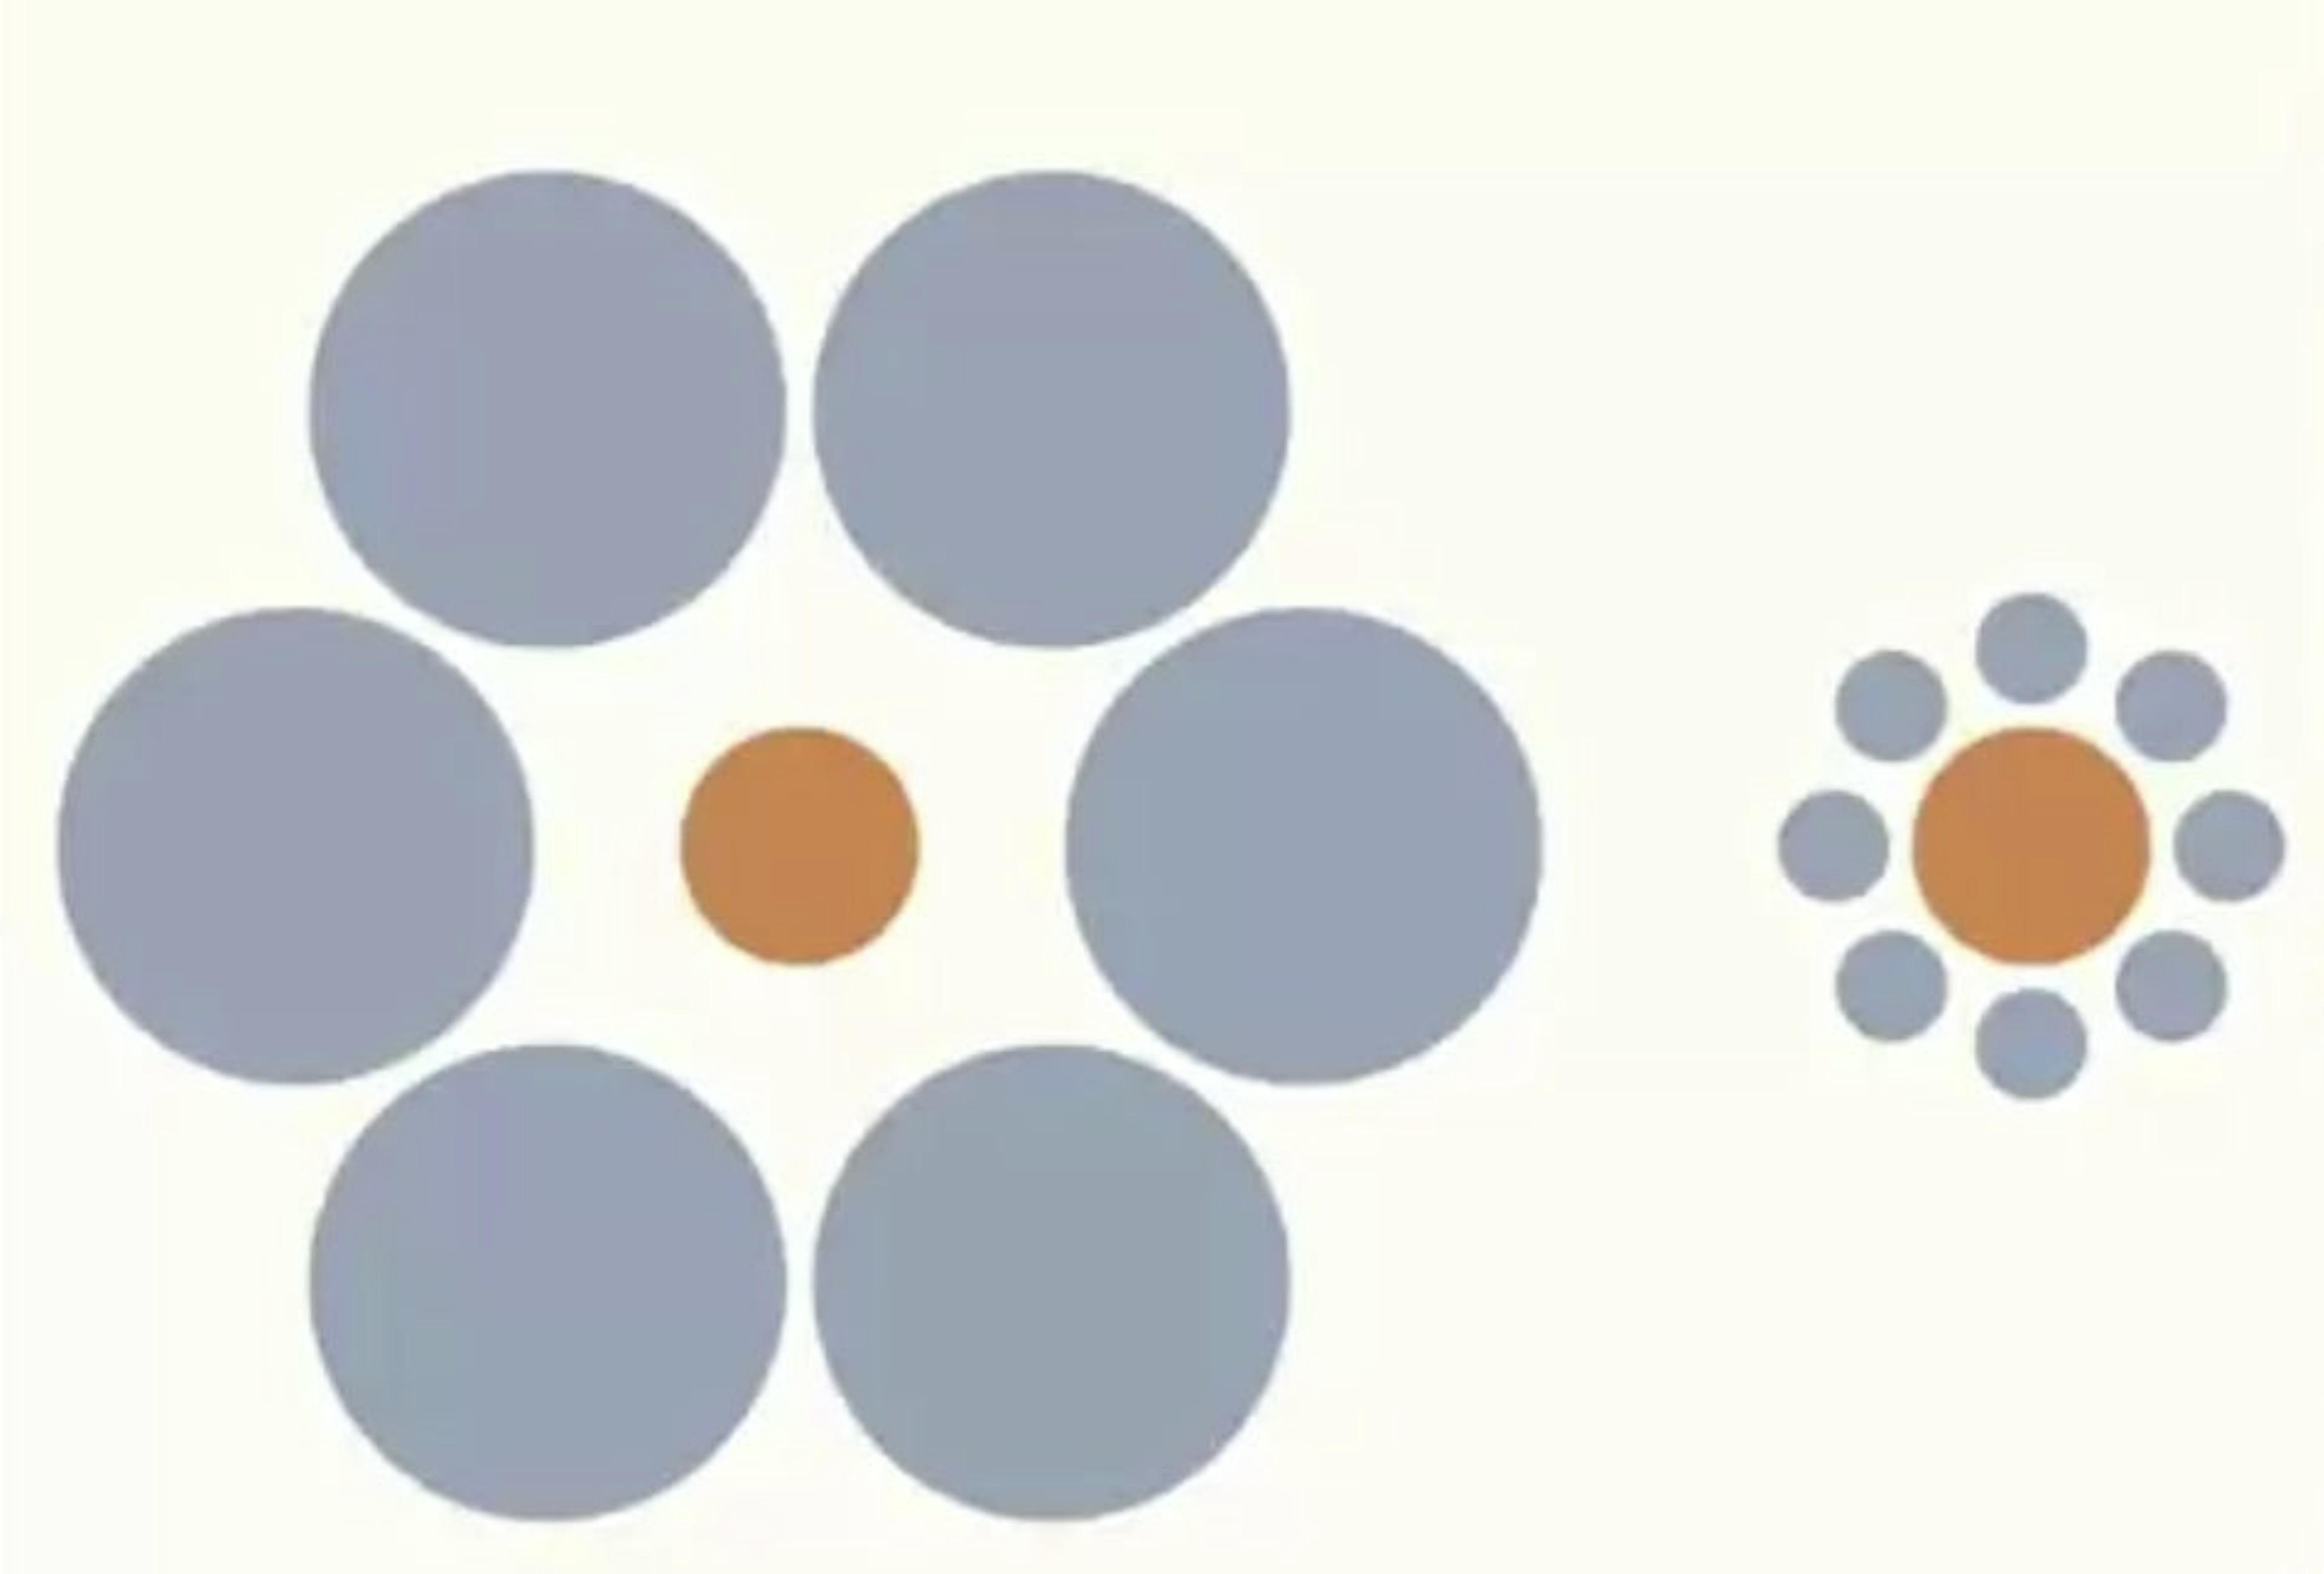 La ilusión de Ebbinghaus. Captura de pantalla de la conferencia del Dr. Santos en Coursera